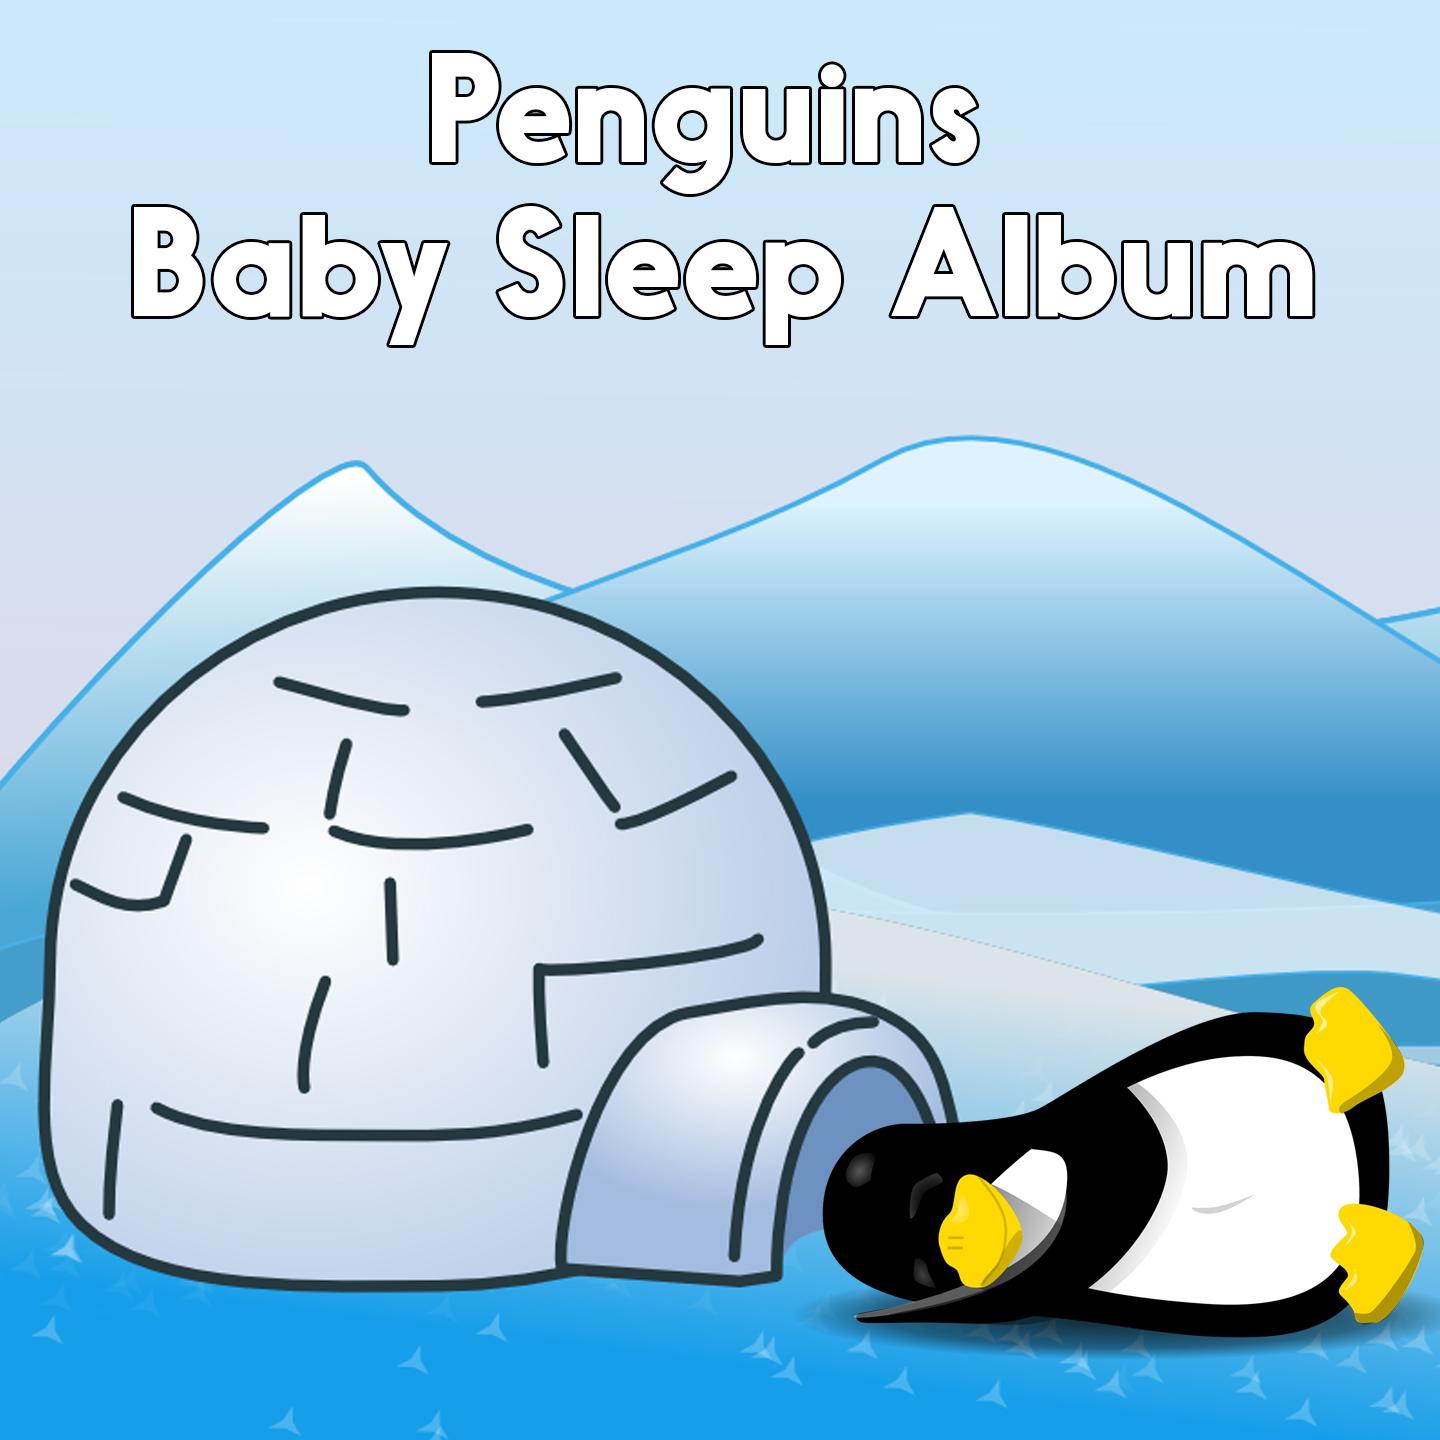 Penguins Baby Sleep Album